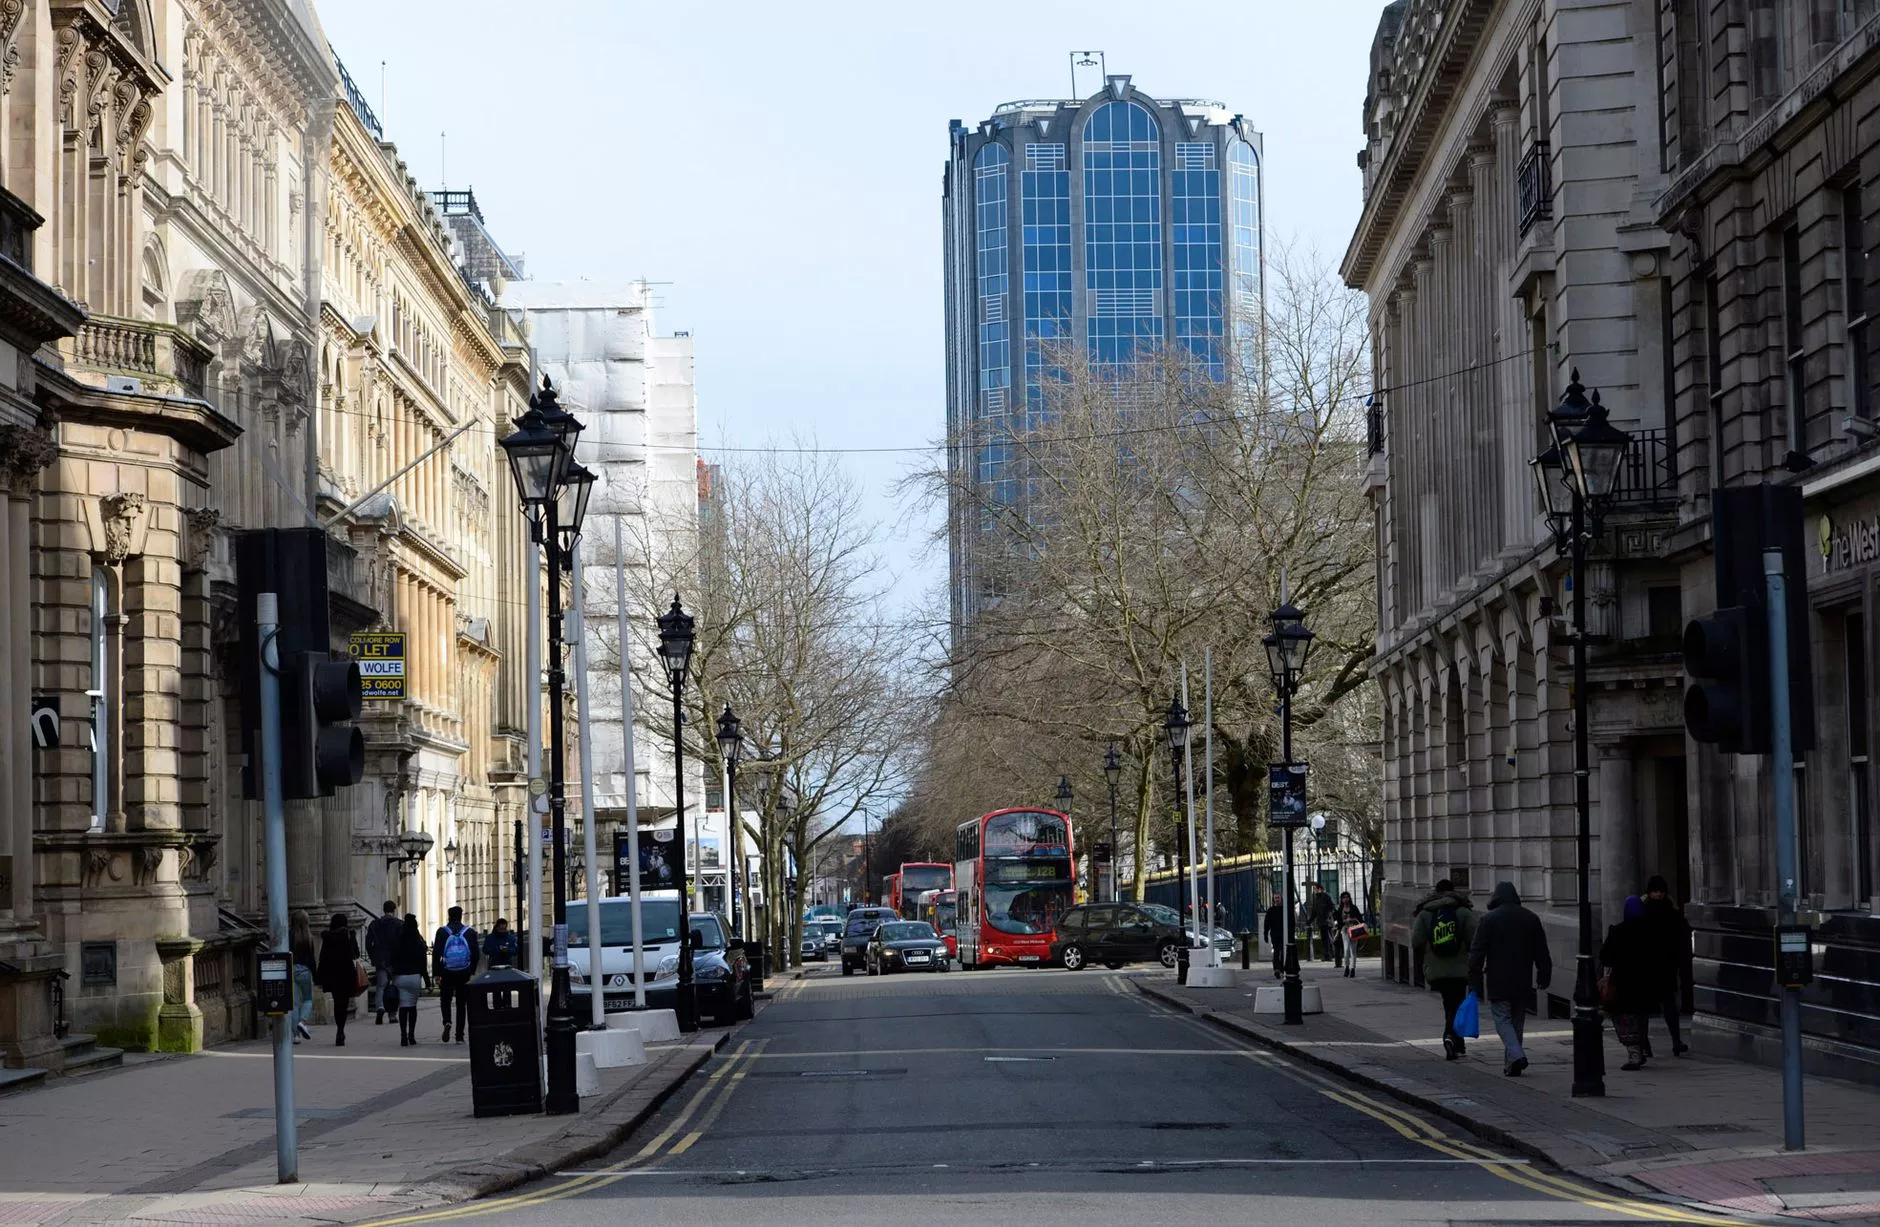 Pictures: Colmore Row area in Birmingham city centre - Birmingham Post